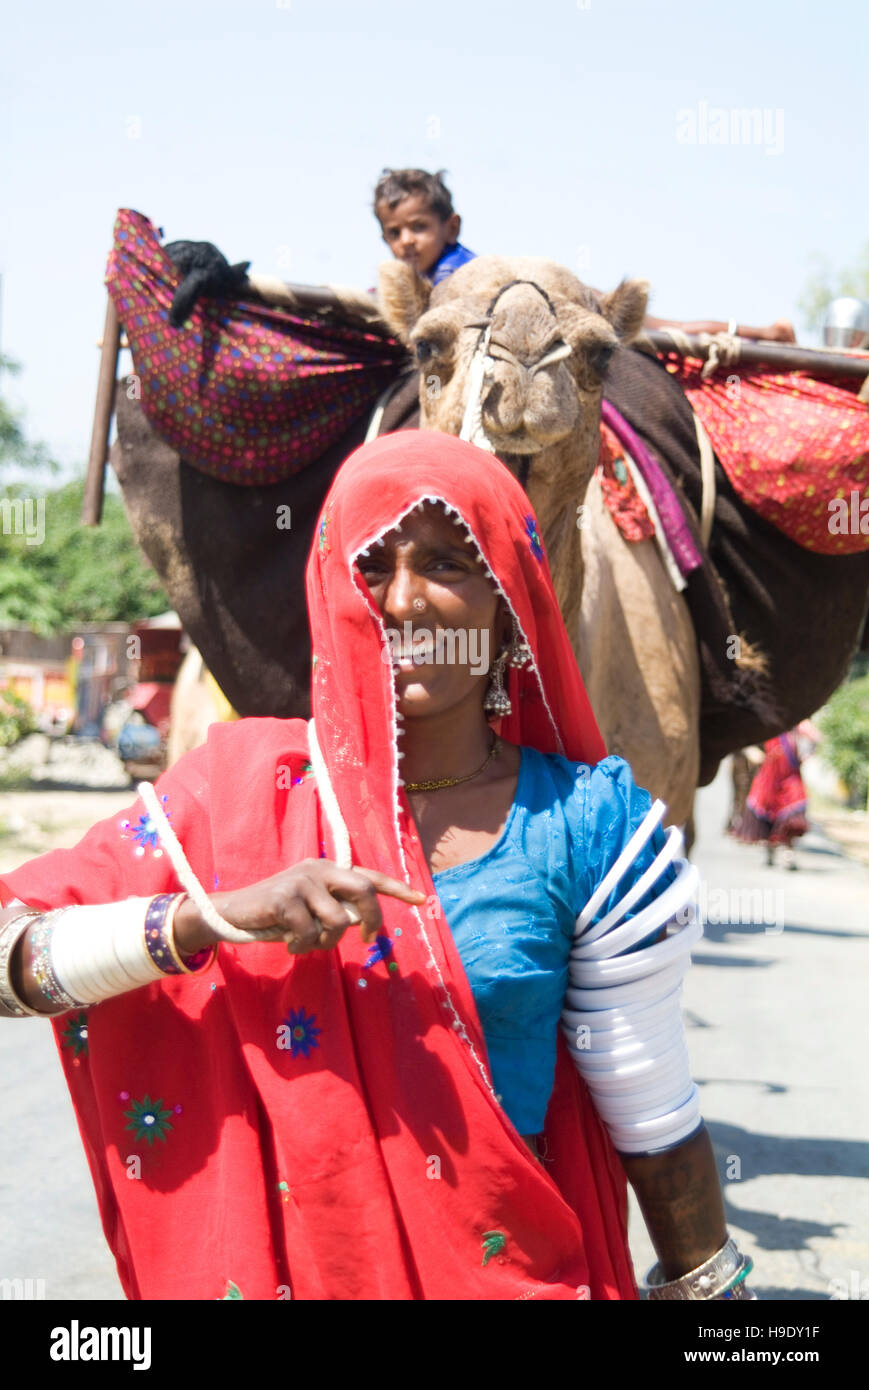 Une femme nomade mène son chameau rempli de biens matériels, y compris l'enfant, le long d'une route dans le sud du Rajasthan, Inde. Banque D'Images